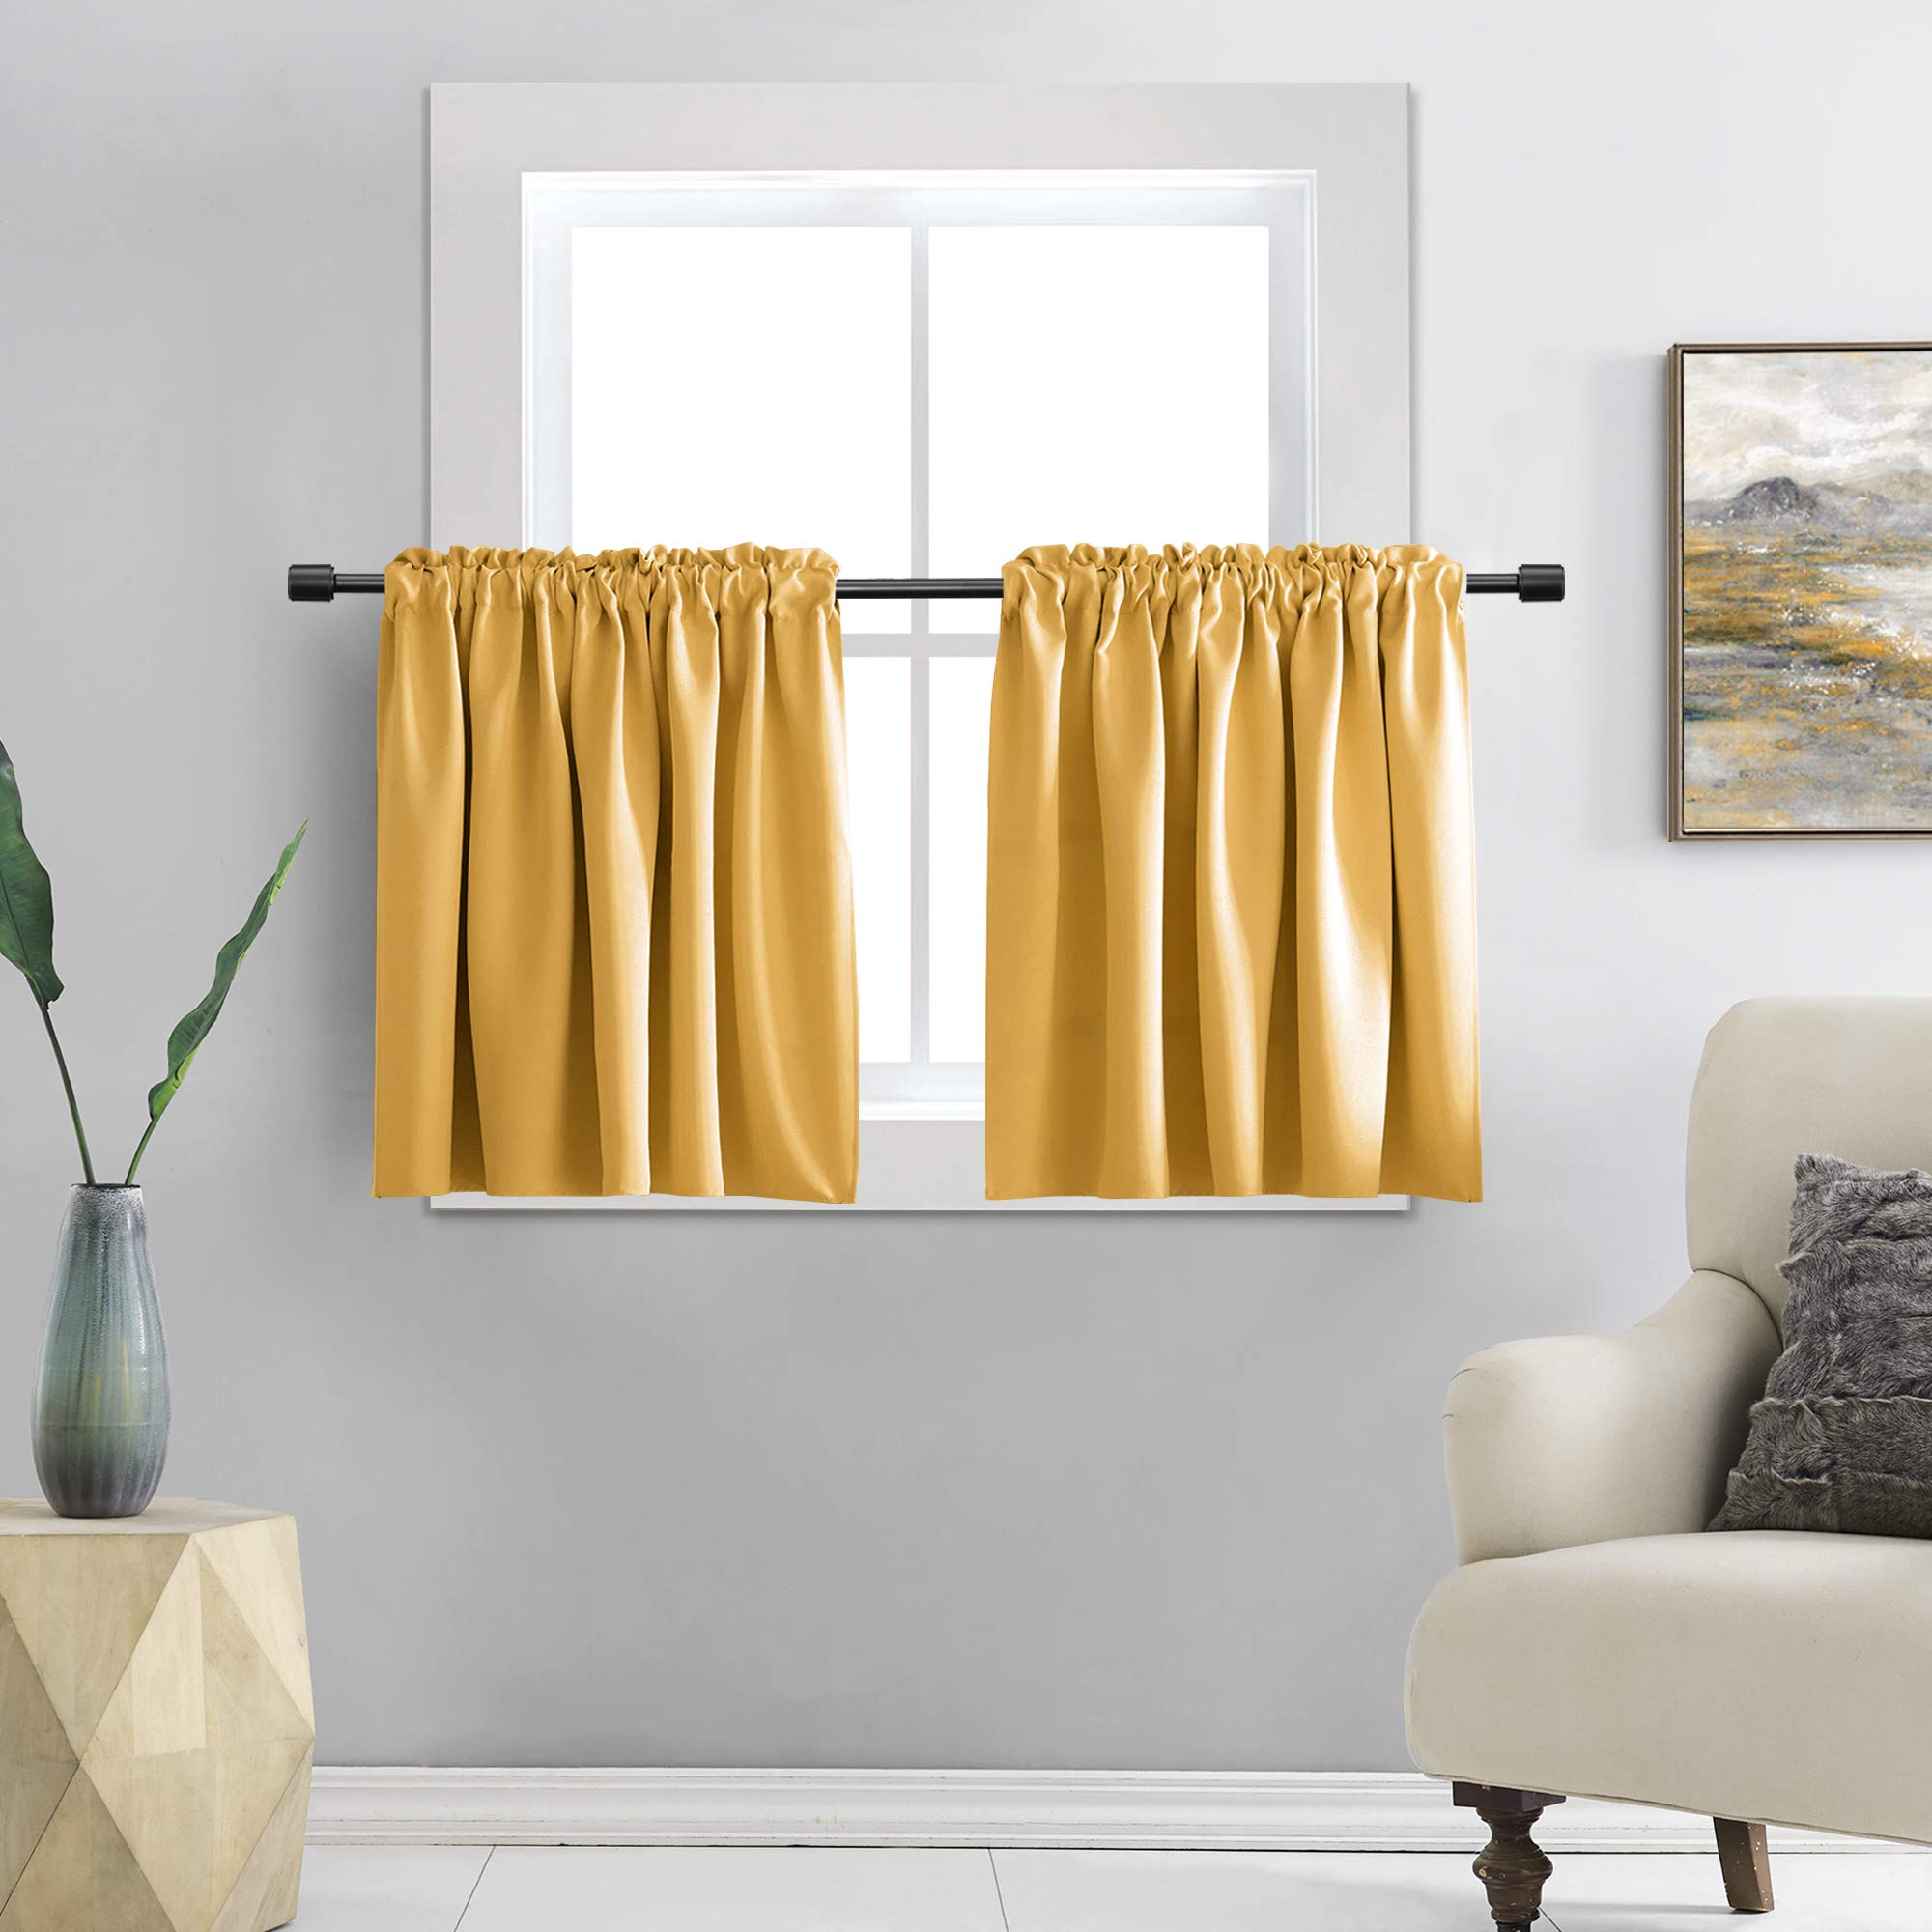 Curtain Ideas for Small Windows